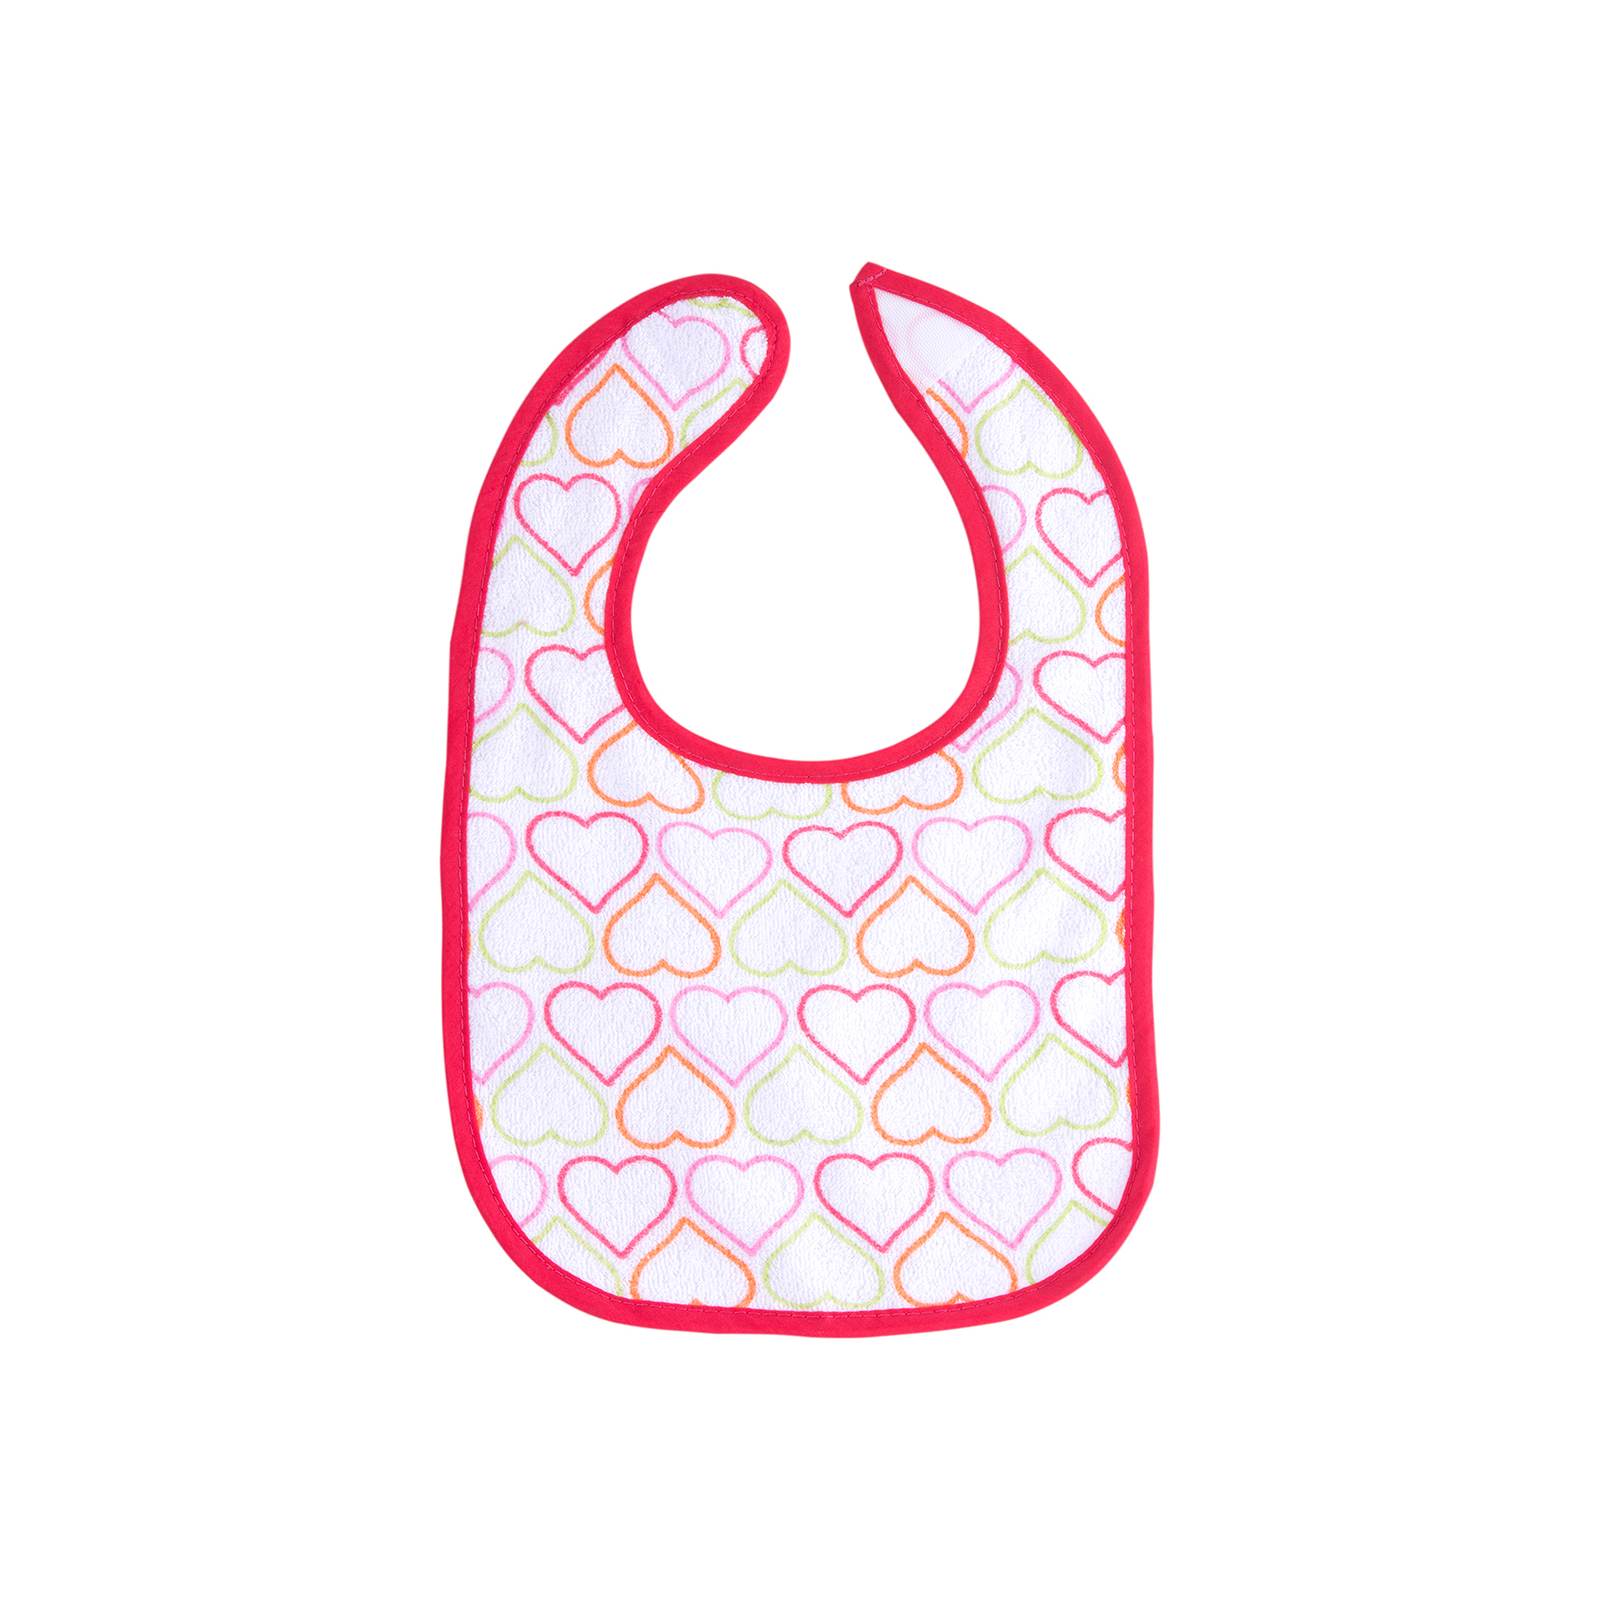 Слюнявчик Luvable Friends 5 шт для девочек с надписями, розовый (2189-pink) изображение 3